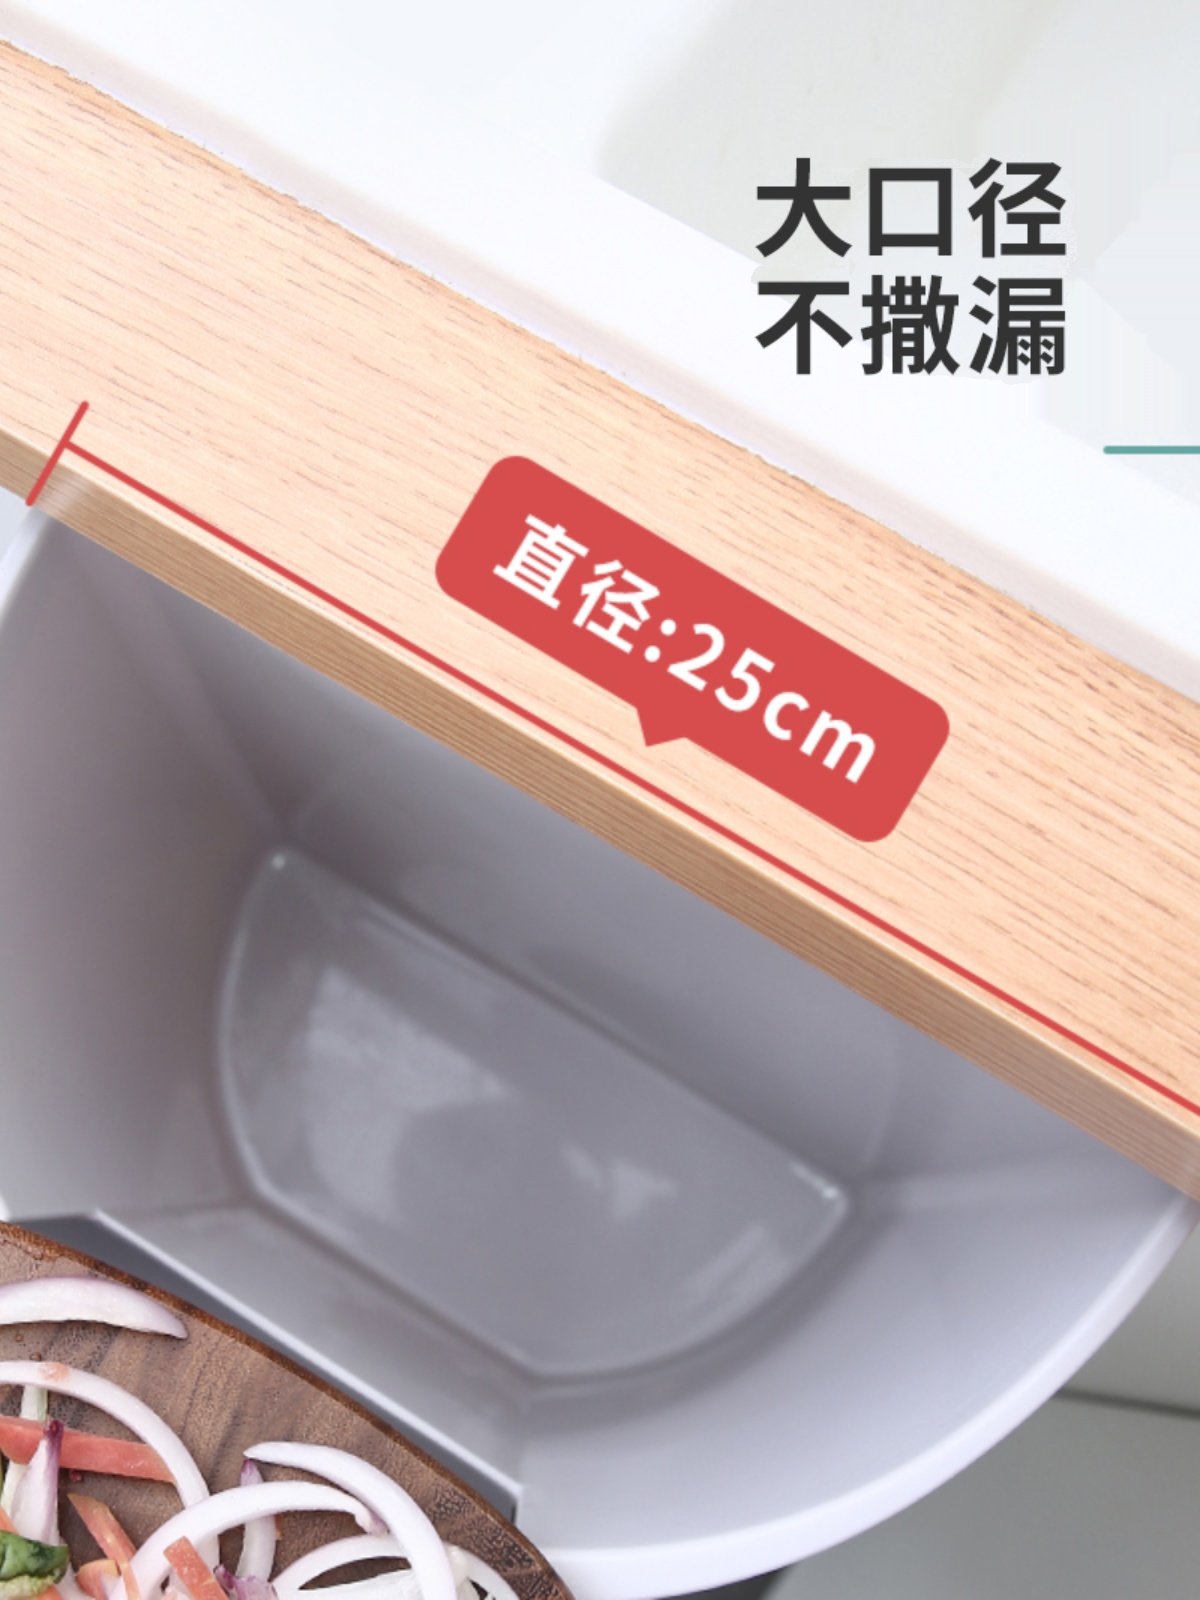 免打孔壁挂式厨房垃圾桶 厨余分类收纳桶 家用橱柜门废纸篓拉圾筒